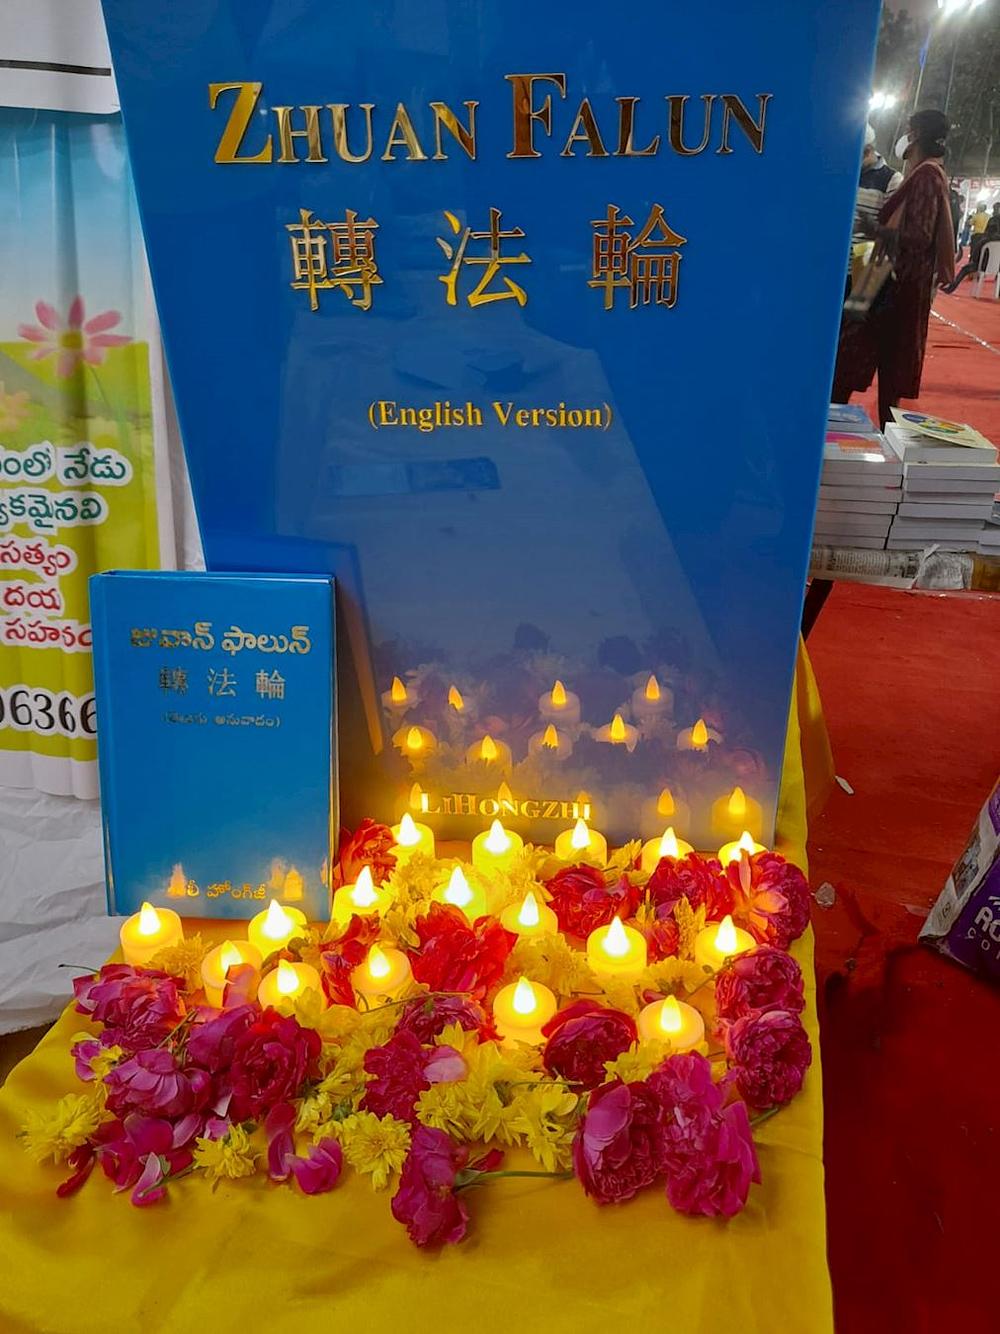  Velika maketa knjige Džuan Falun bila je izložena na štandu Falun Dafe u Vijaiavadi. Prevedeno na više od 40 jezika, to je glavno učenje Falun Dafe.
